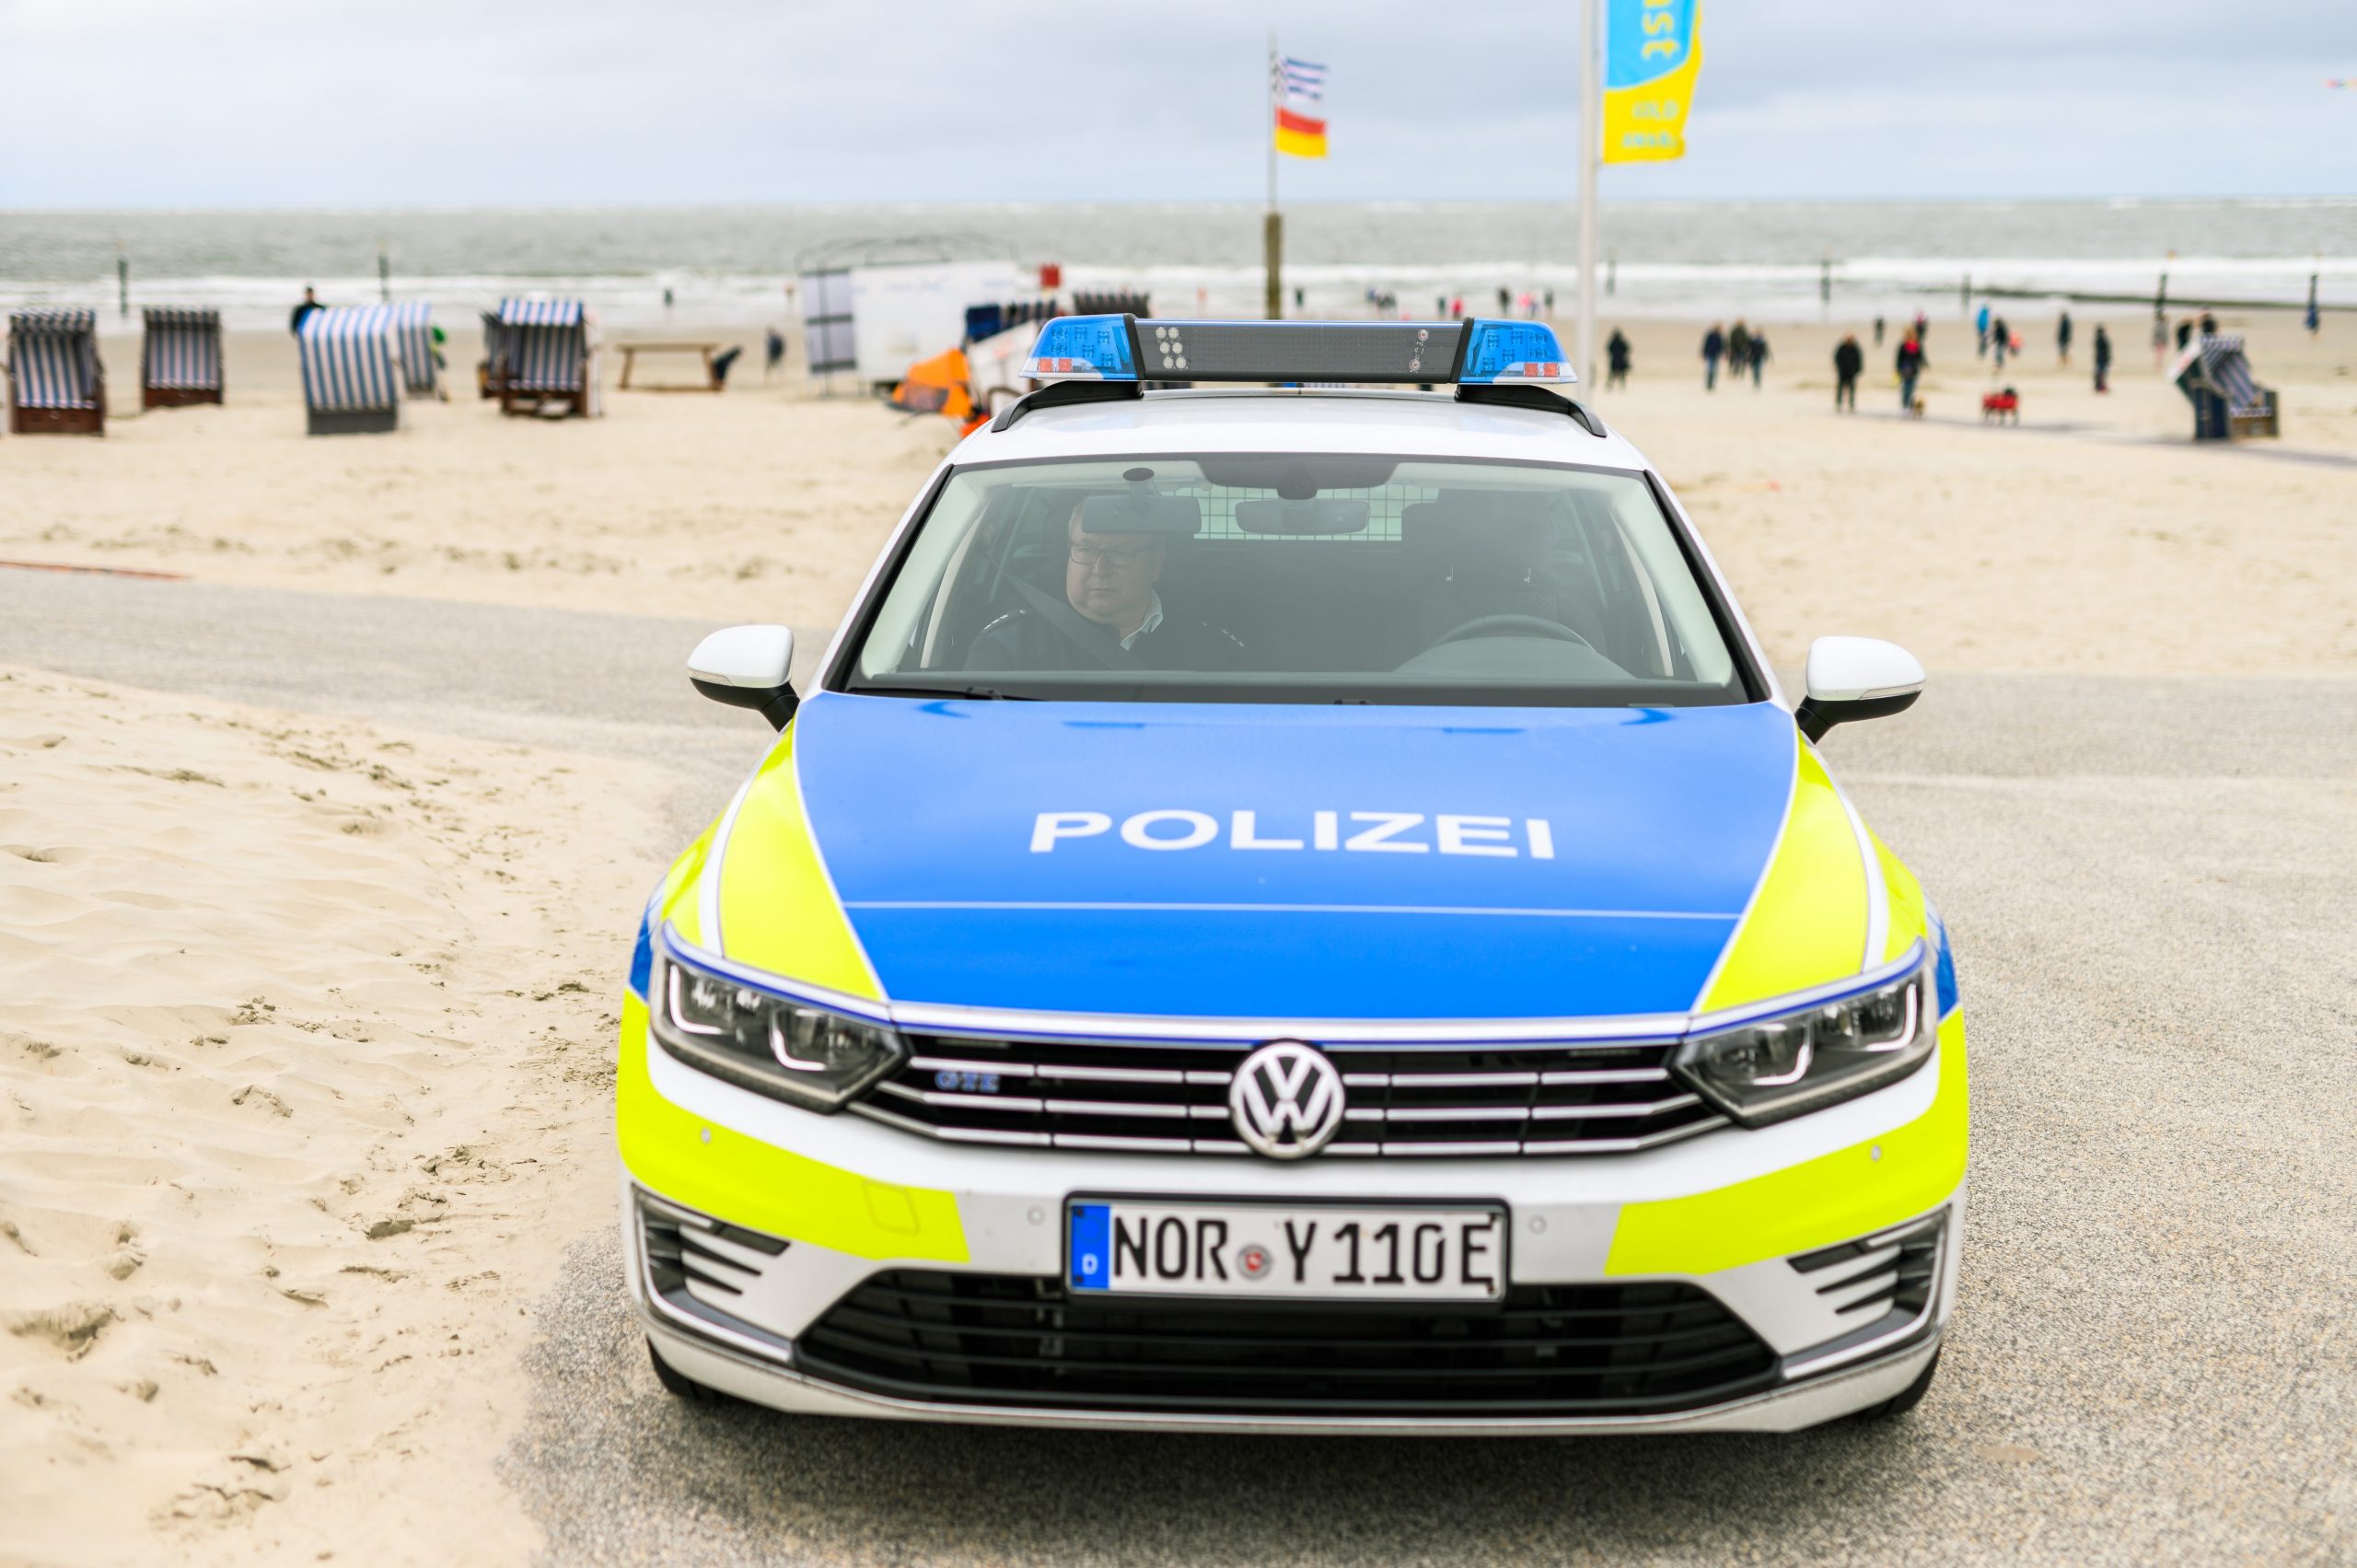 Auf den ostfriesischen Inseln, wie hier auf Norderney, sollen in Zukunft mehr Polizisten präsent sein. (Symbolbild)